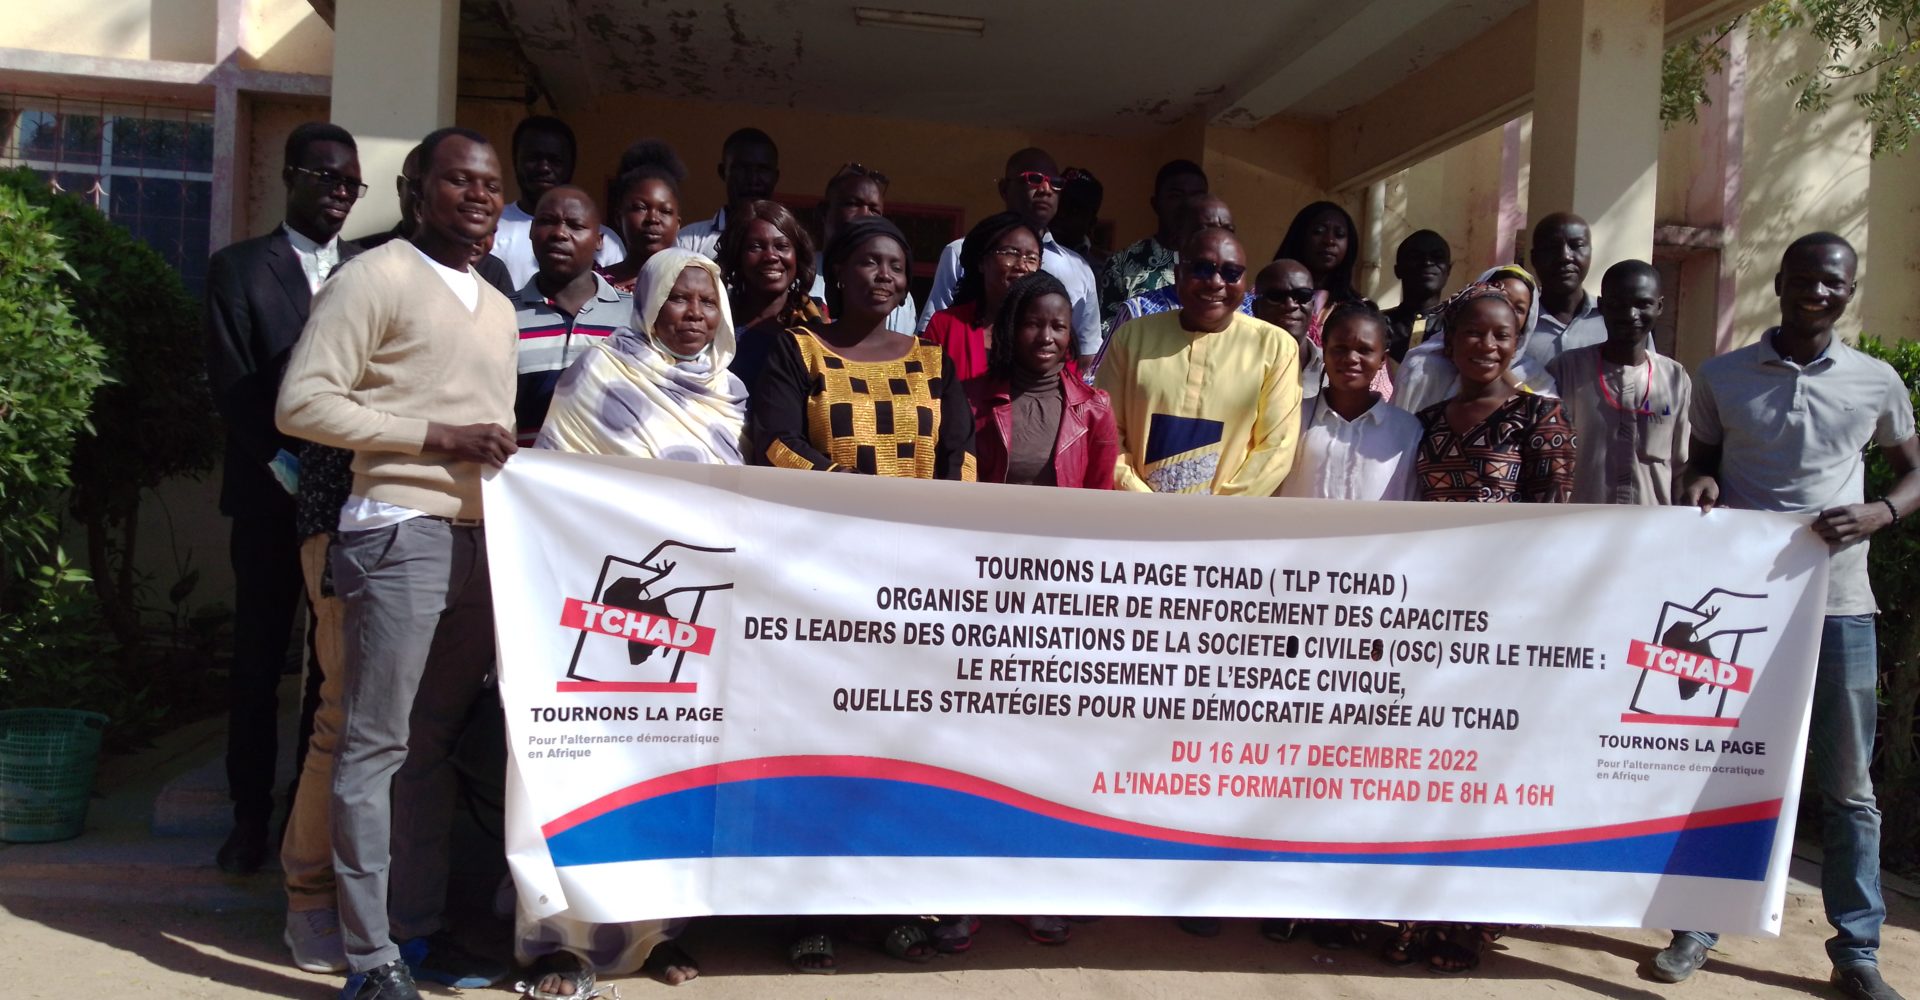 Tournons la page Tchad organise un atelier de formation des acteurs société civile, sur les restrictions de l'espace civique 1